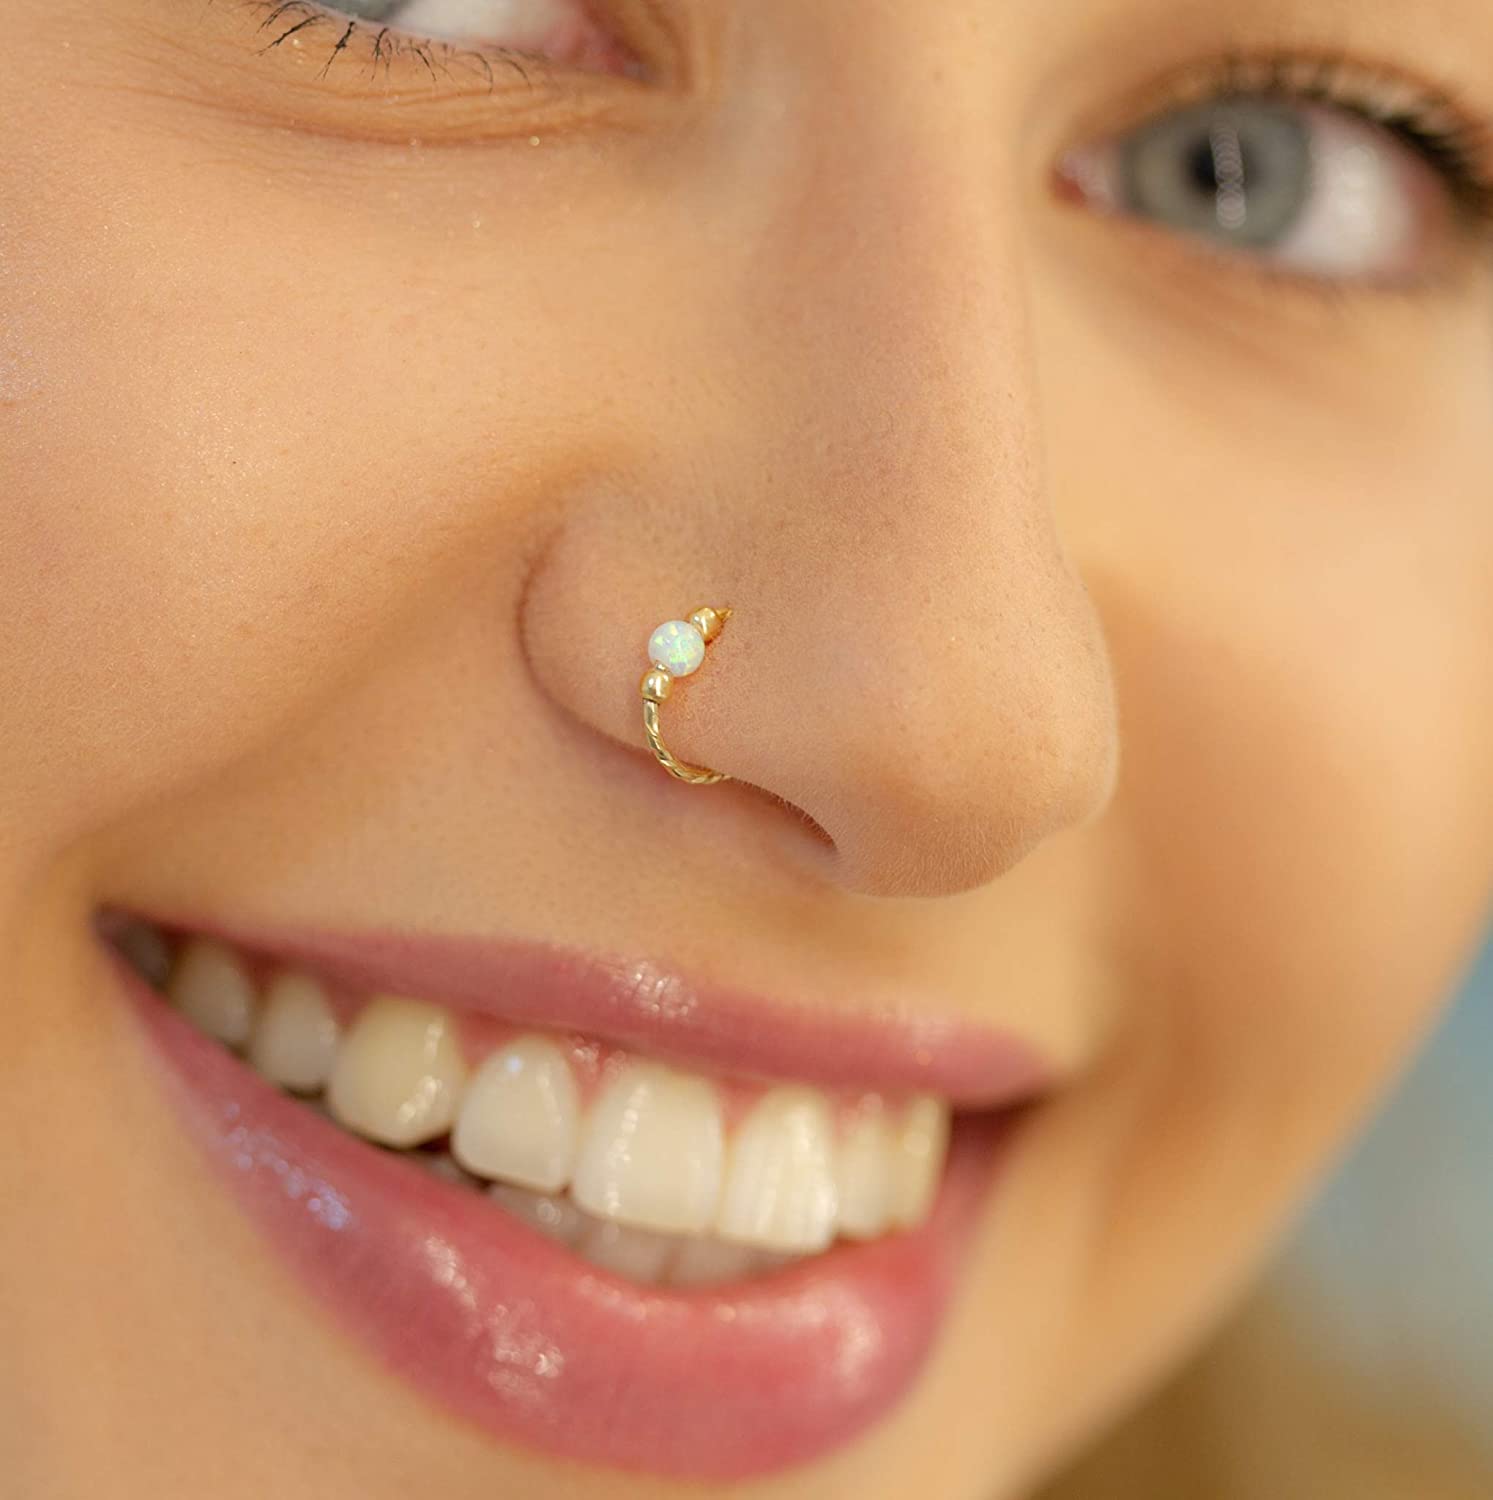 Diamond Nose Ring, Diamond Gold Nose Ring, Rose Gold White Gold Nose Ring,  Indian Nose Ring, Diamond Nose Hoop, Diamond Piercing, SKU 119 - Etsy |  Diamond nose ring, Rose gold nose